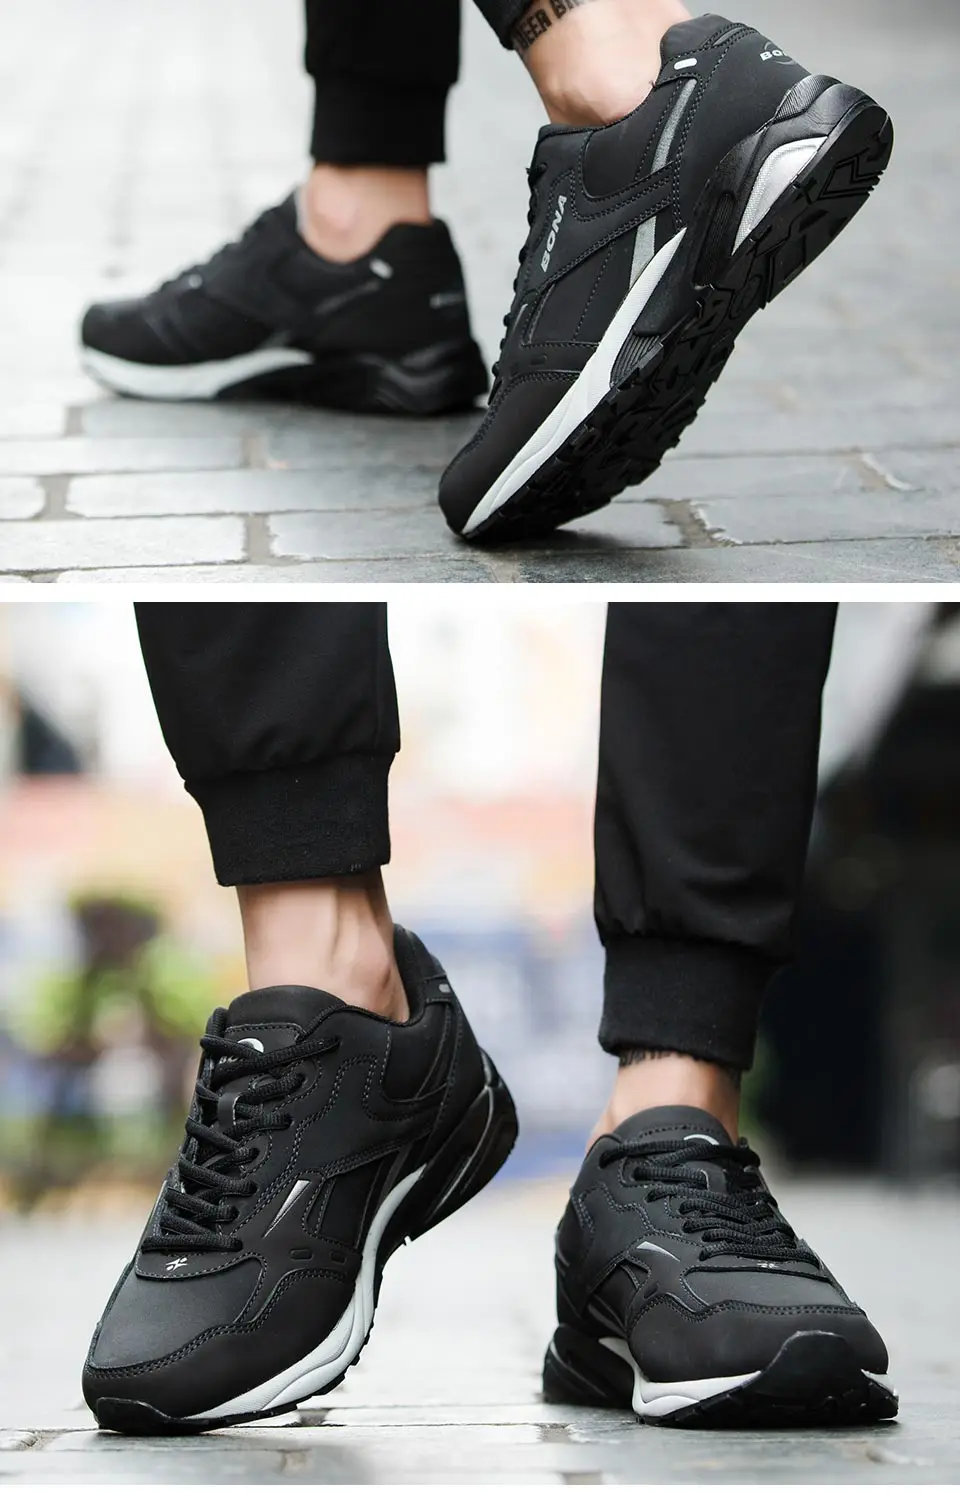 BONA/Новинка; классические стильные мужские кроссовки для бега на шнуровке; Мужская Спортивная обувь из яловичного спилка; мужские уличные беговые кроссовки из искусственной кожи;